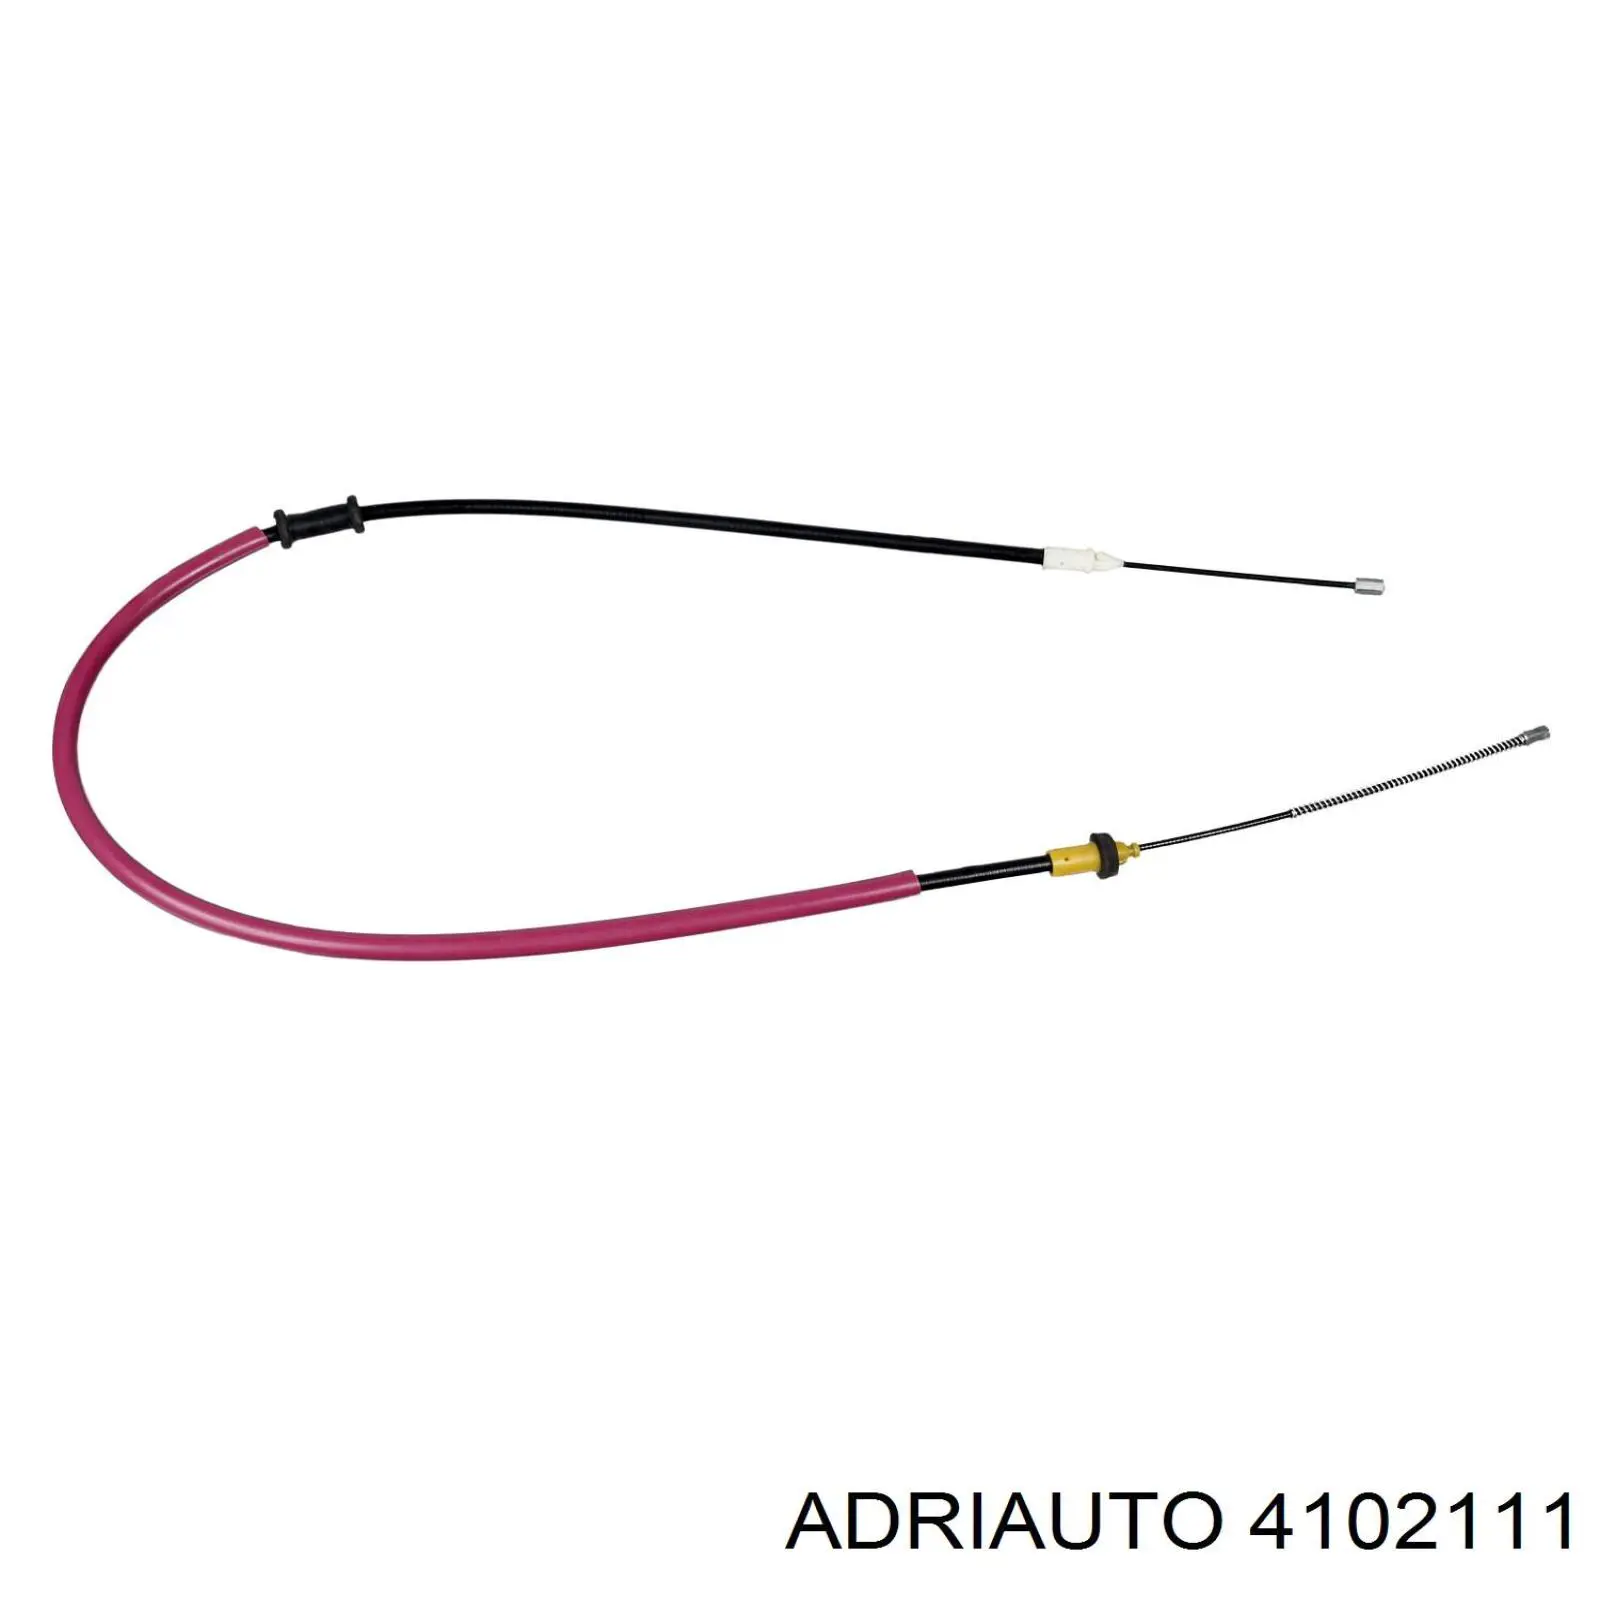 4102111 Adriauto cable de freno de mano trasero izquierdo